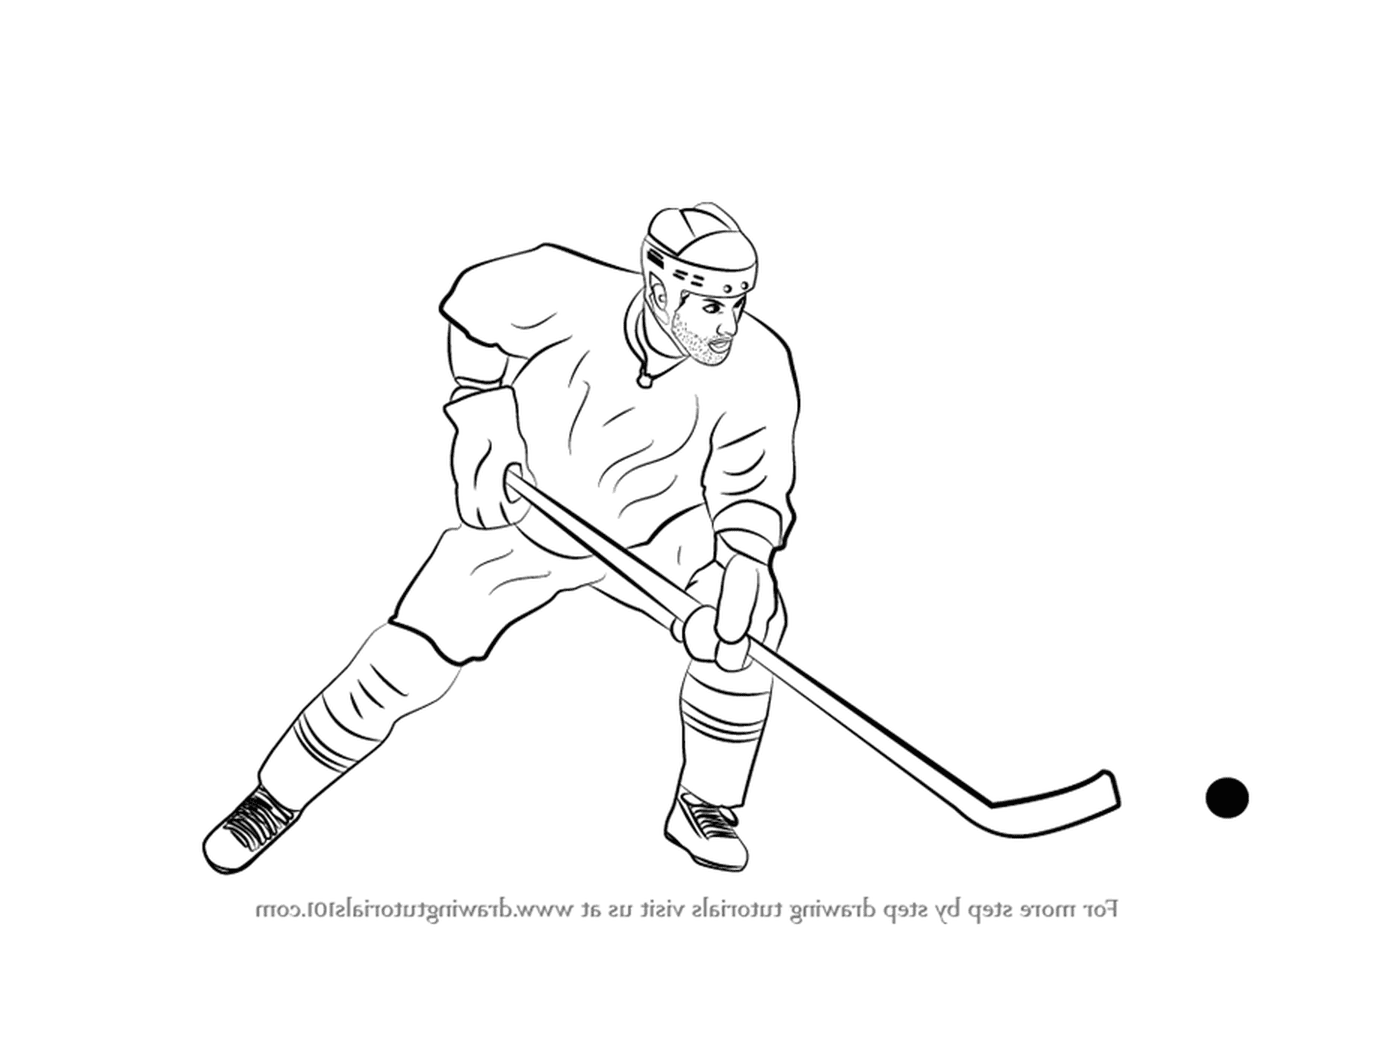  Zeichnen eines Hockeyspielers 